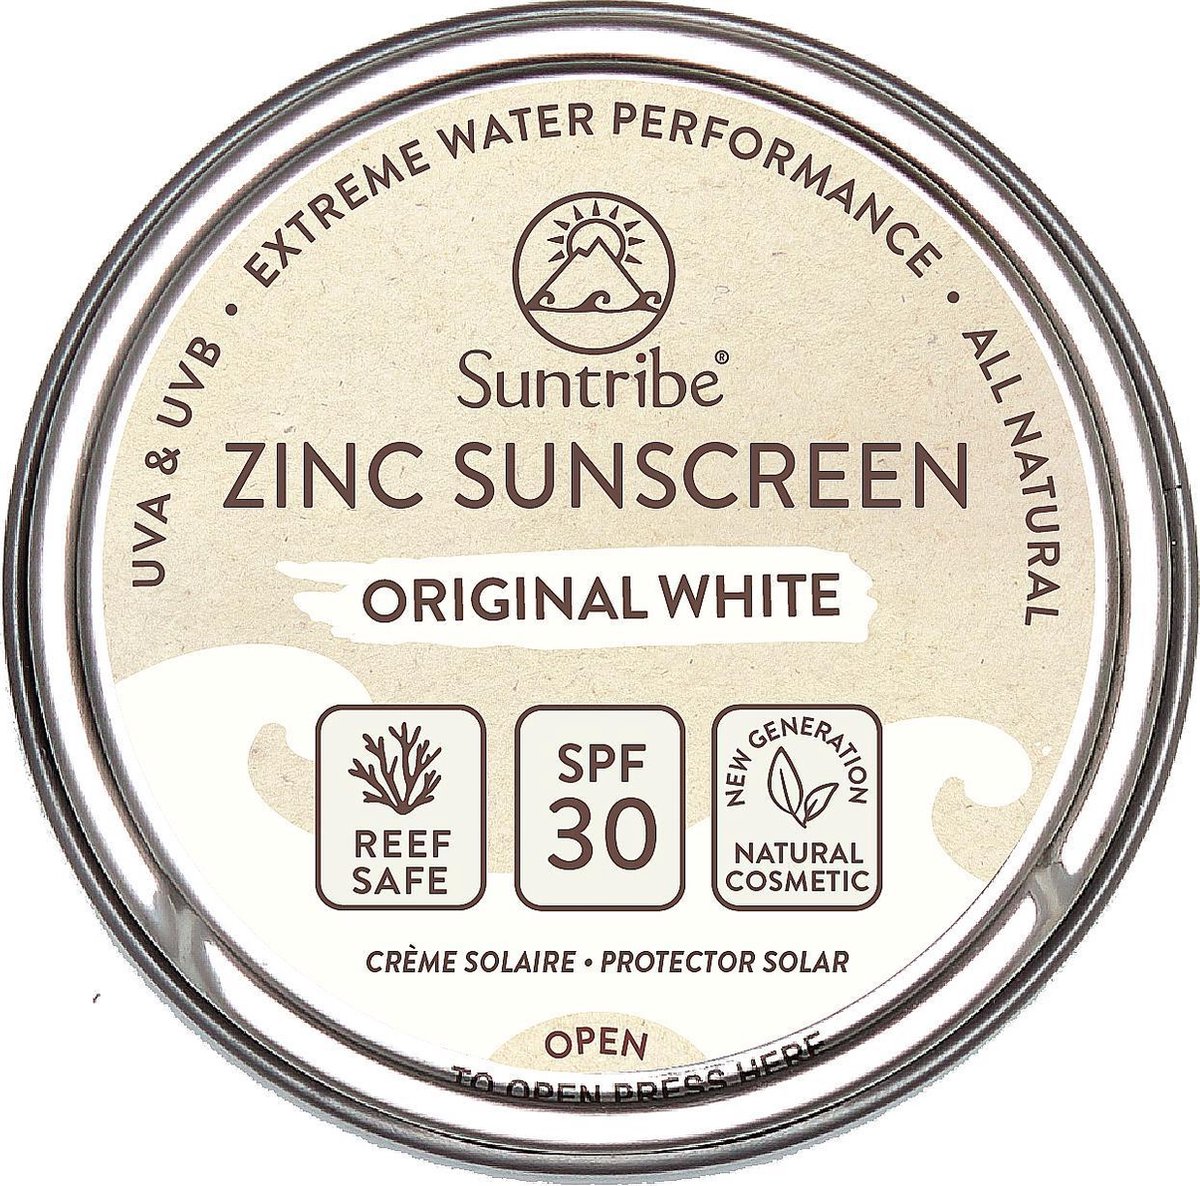 Zonnebrandcrème - Gezicht & Sport - SPF 30 - Original White - 45 gr Original White - 45 gr